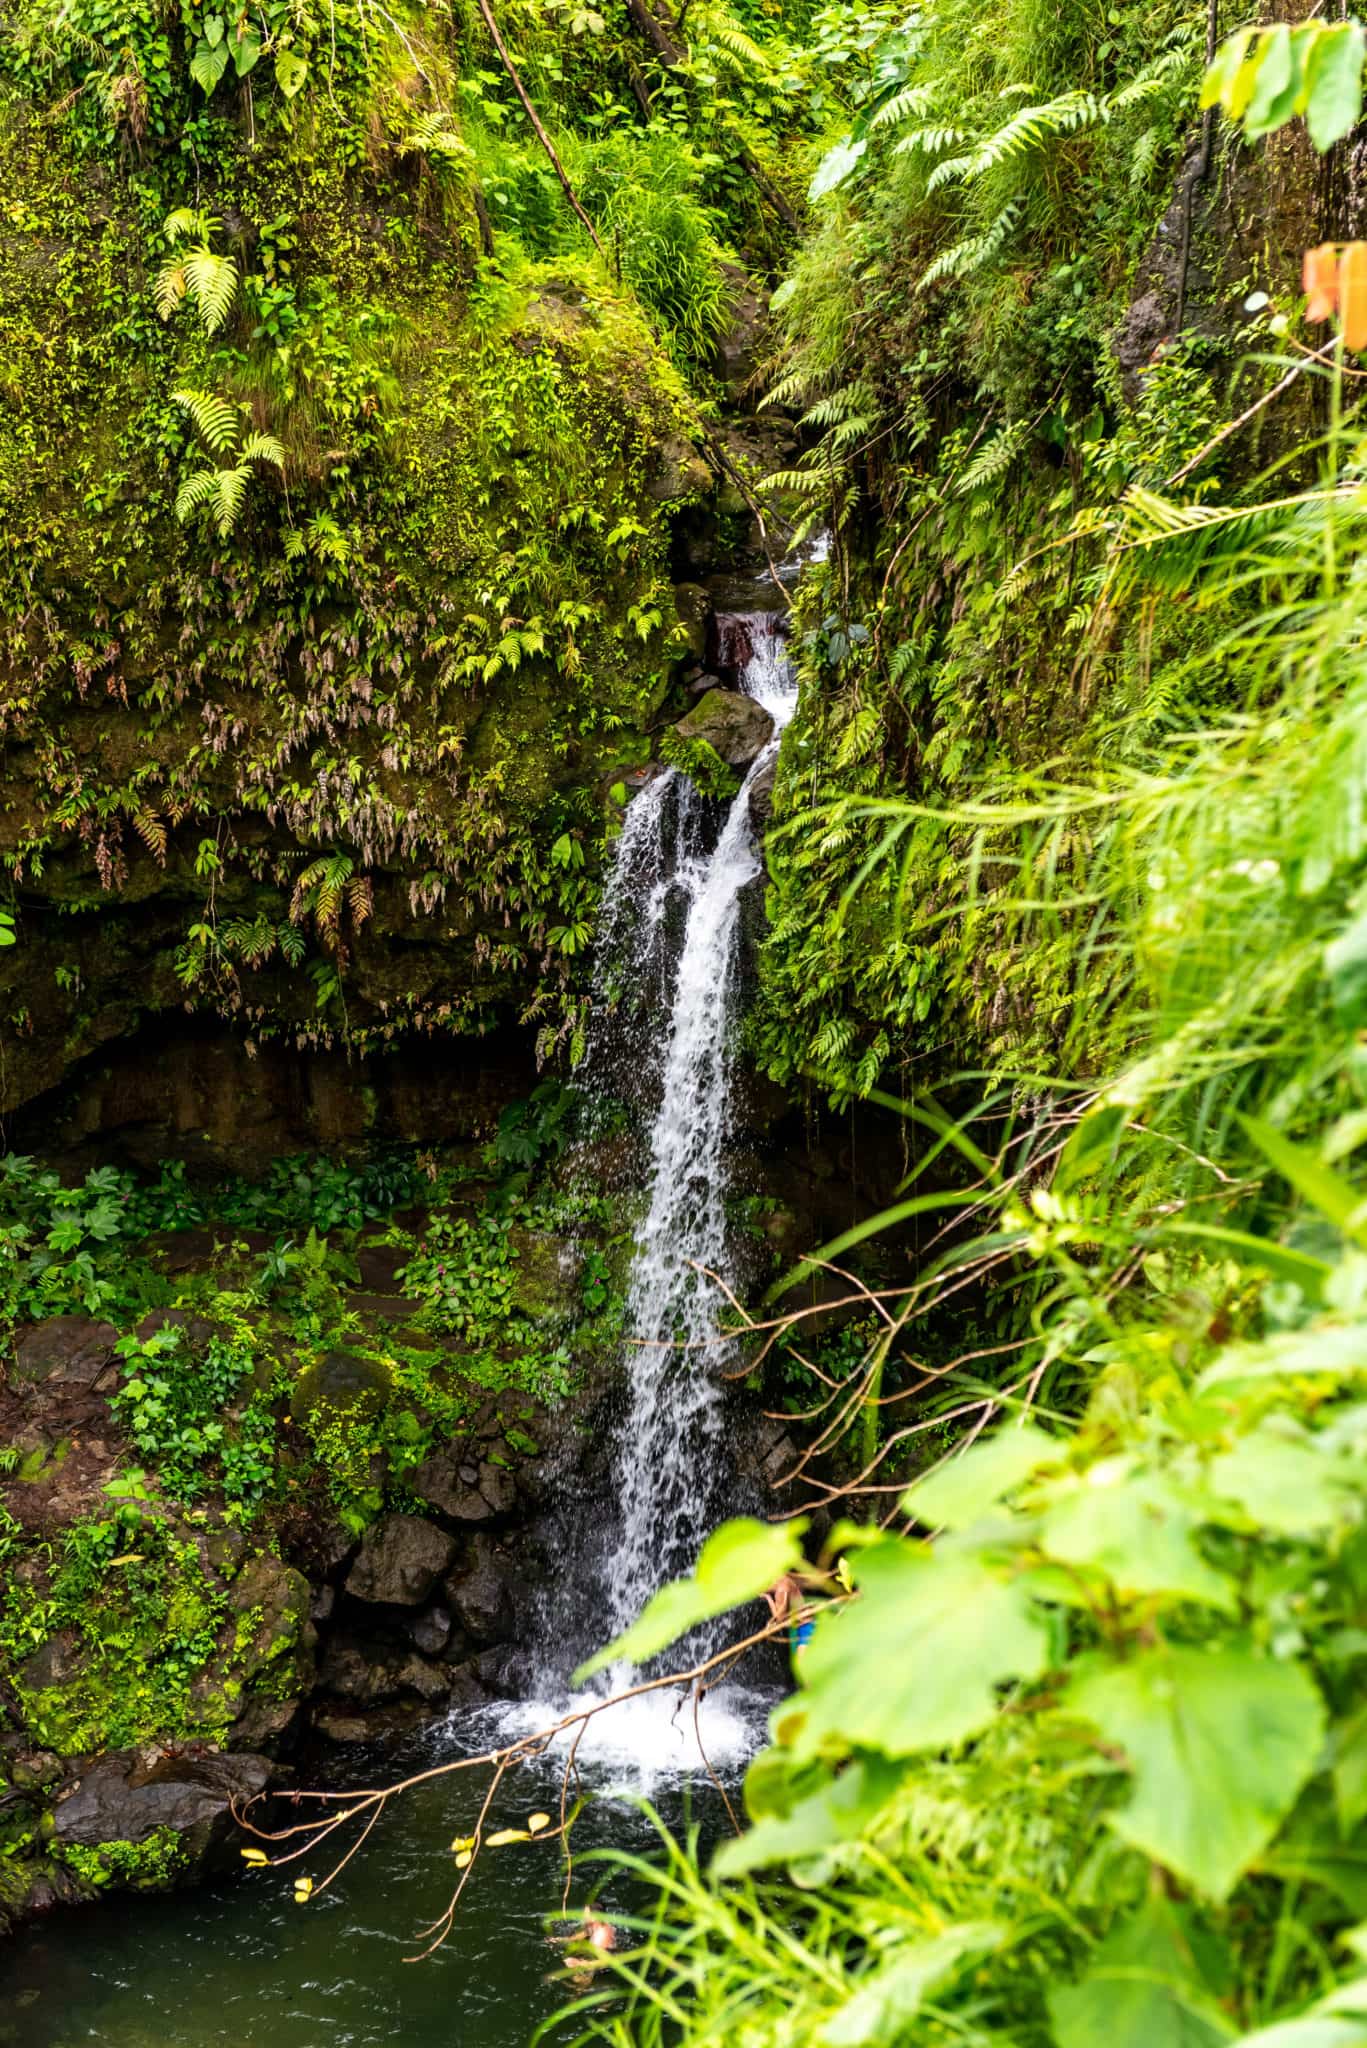 Emerald Pool Waterfall Dominica